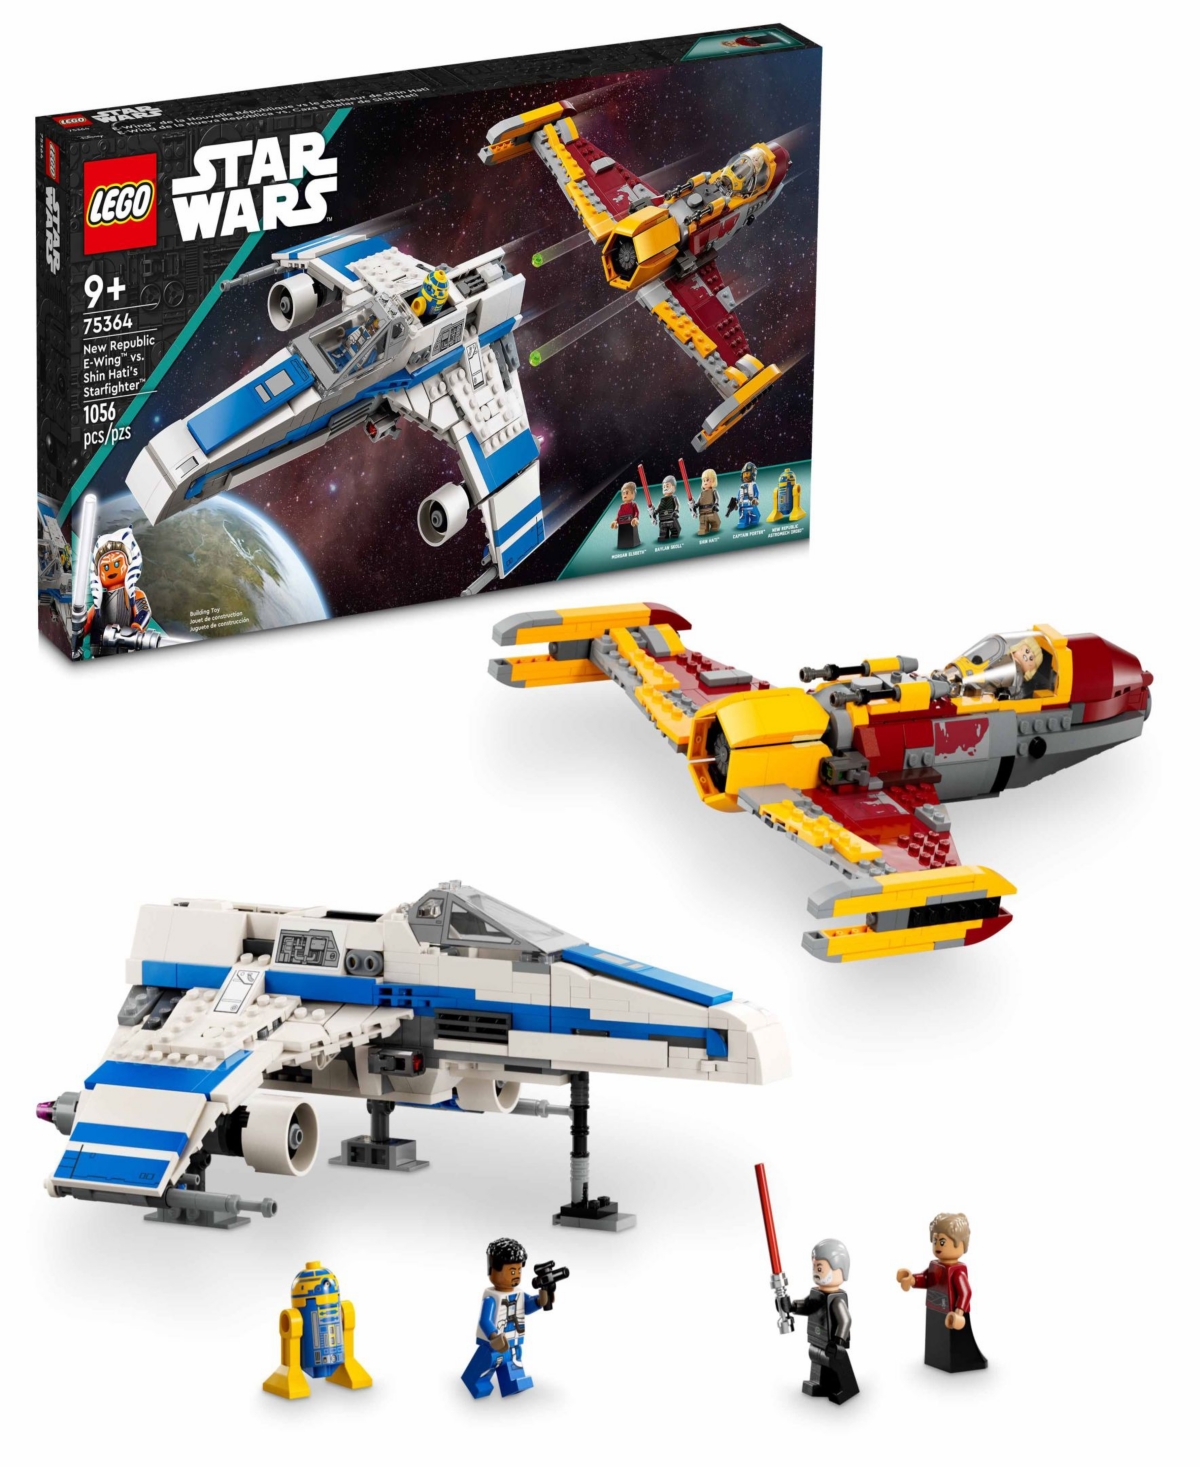 Lego Star Wars 75364 New Republic E-wing Vs. Shin Hati's Starfighter Toy Building Set In Multicolor